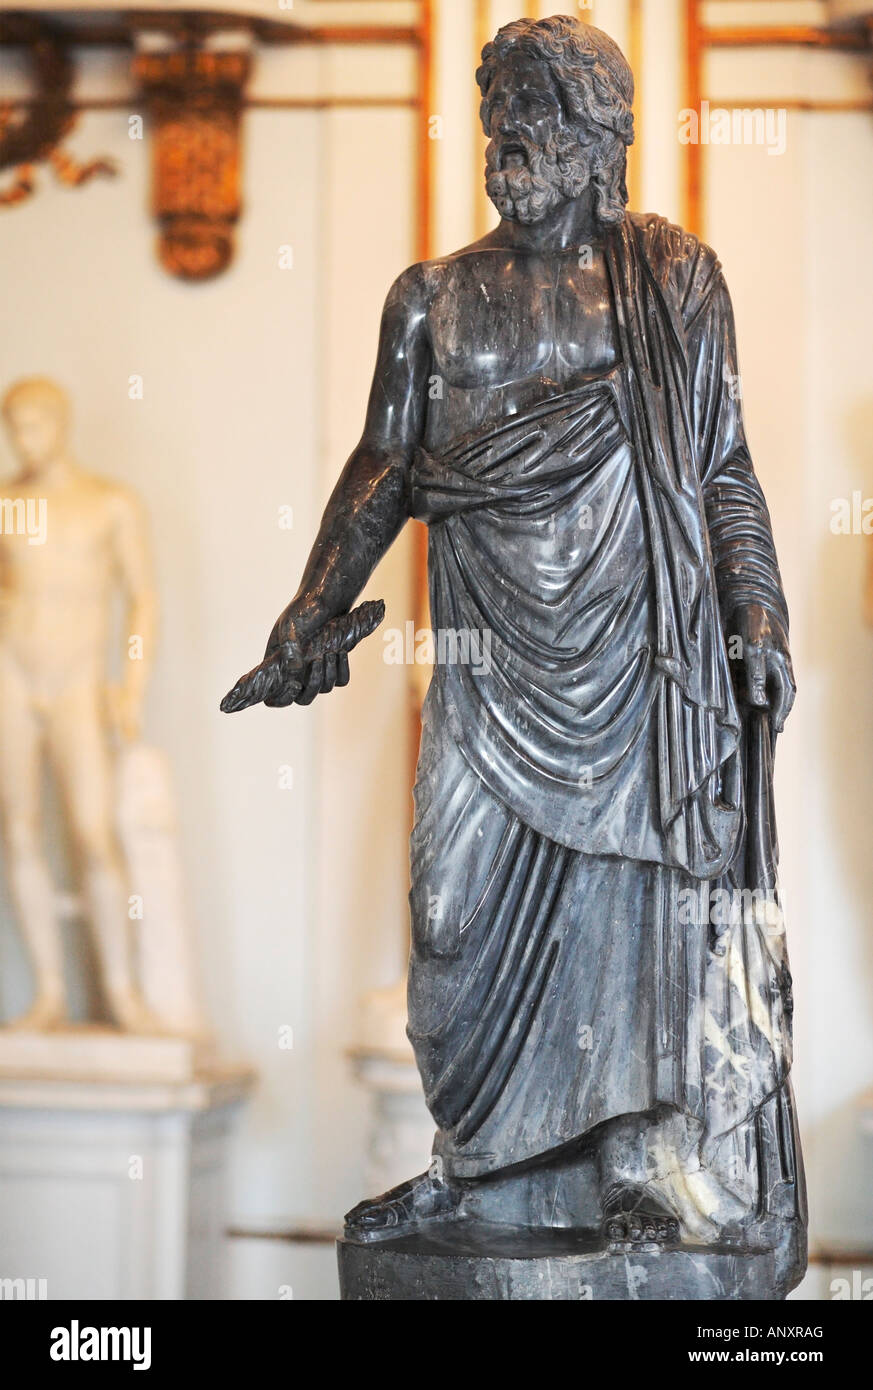 Statue en marbre noir de Zeus, Grand Hall, Musées du Capitole, Musei Capitolini, Rome, Italie Banque D'Images